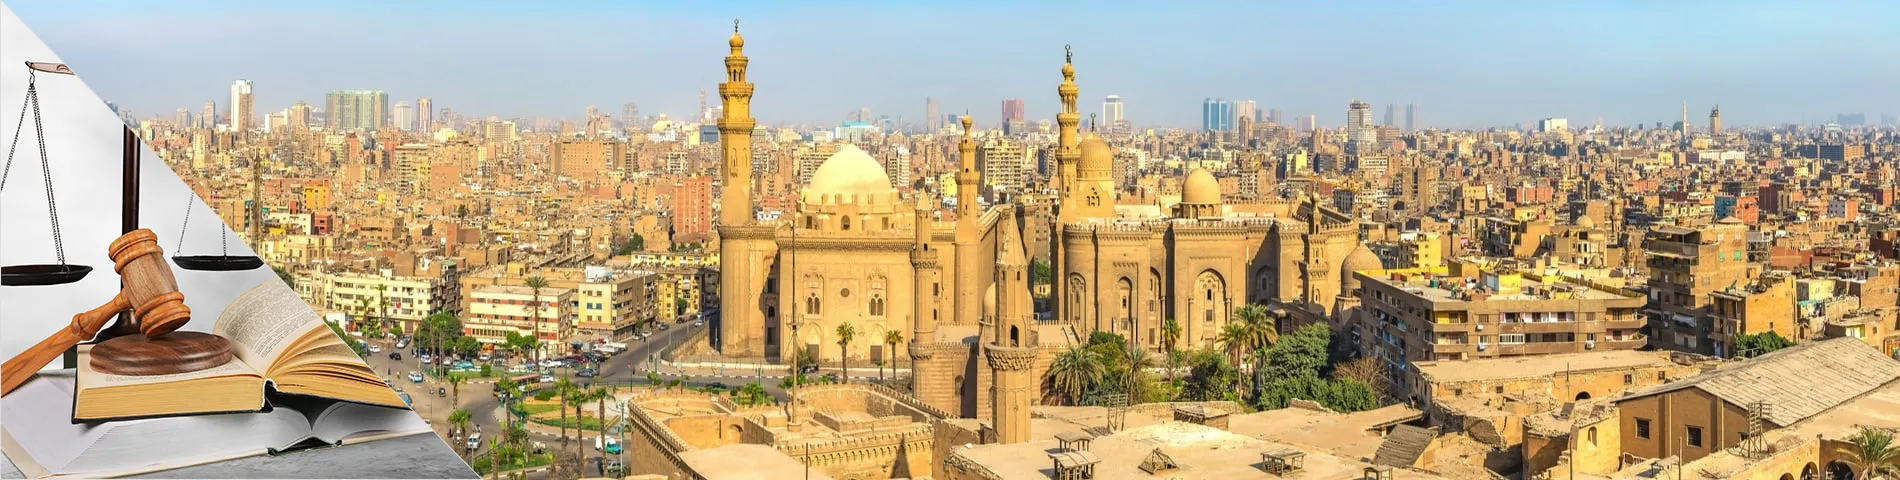 카이로 - 변호사를 위한 아랍어 